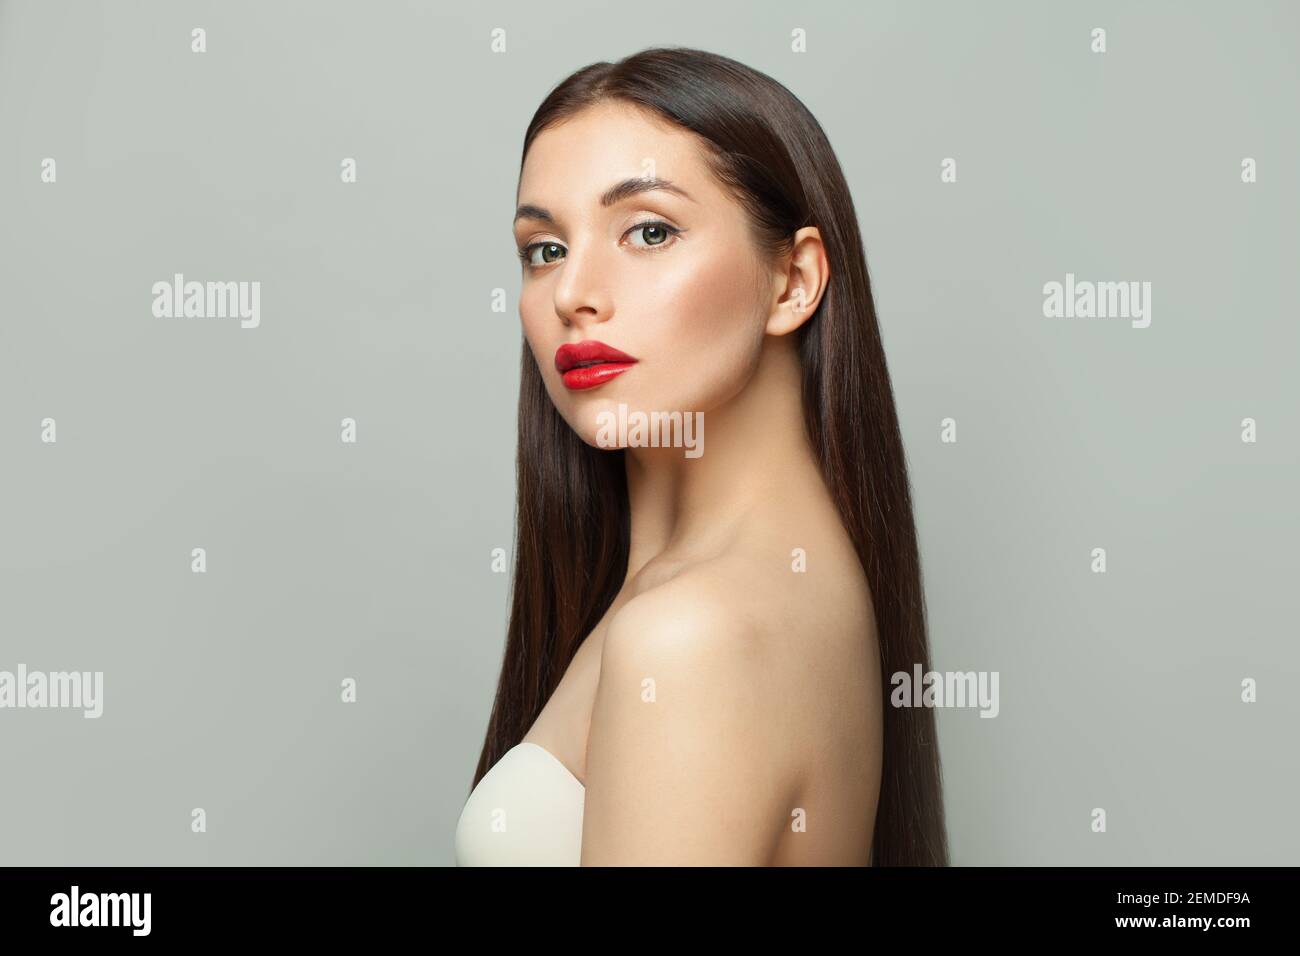 Celebrità moda modello donna brunette con pelle chiara e lungo capelli lisci sani su sfondo bianco Foto Stock